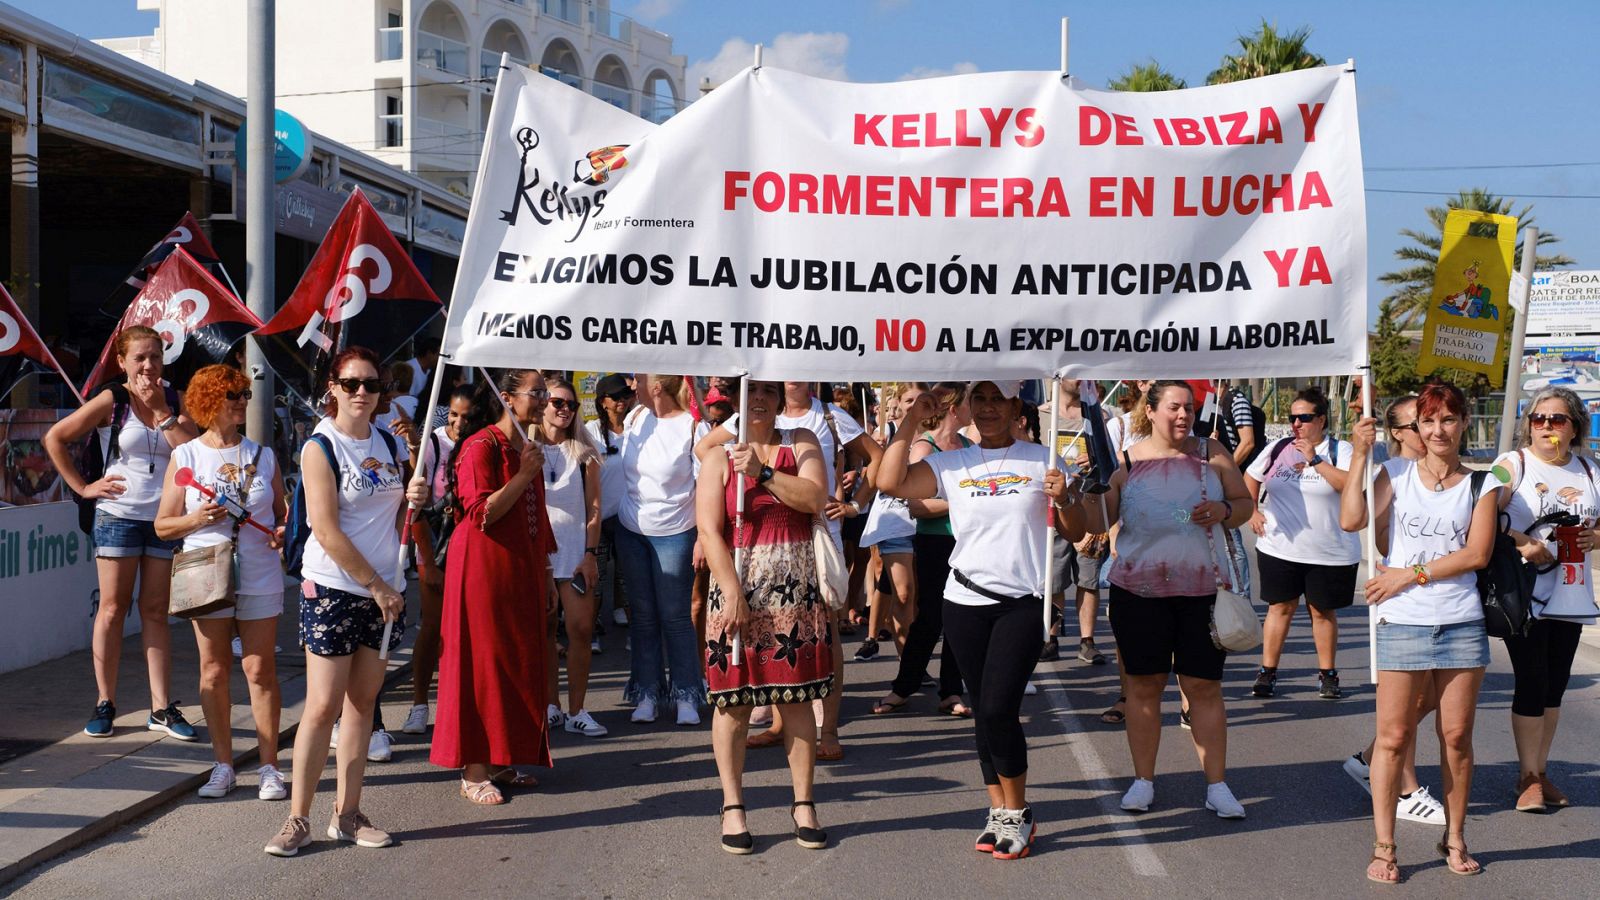 Telediario 1: Las camareras de piso, conocidas como 'kellys', de Ibiza y Formentera van a la huelga | RTVE Play